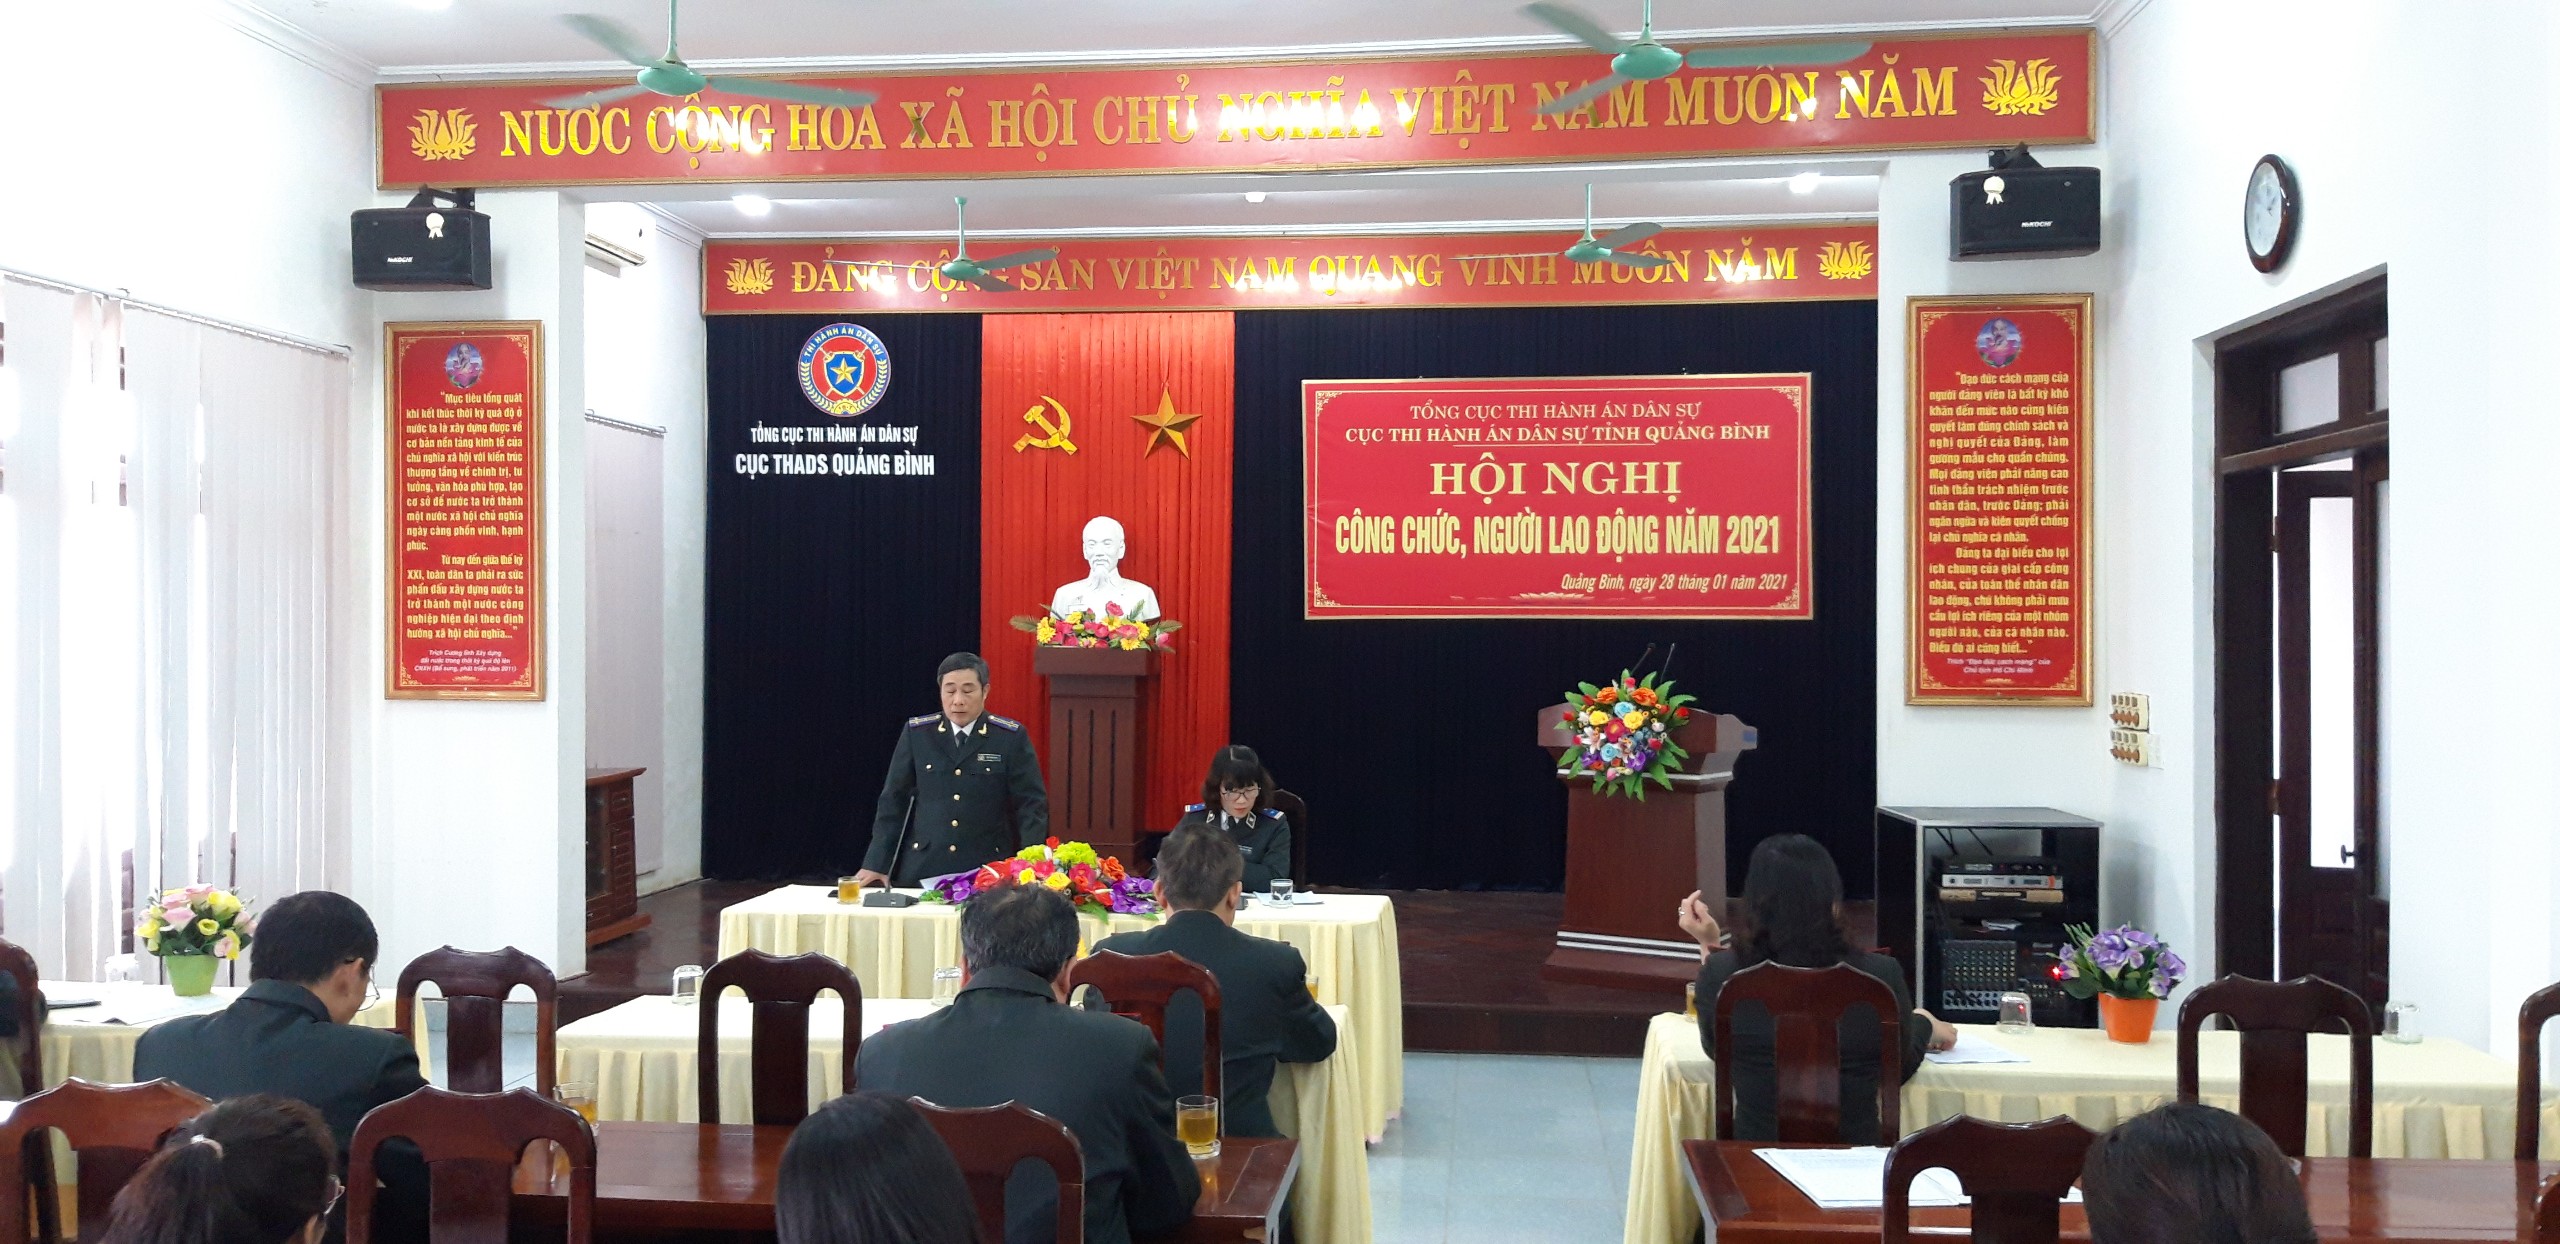 Cục Thi hành án dân sự tỉnh Quảng Bình tổ chức  Hội nghị công chức, người lao động năm 2021.